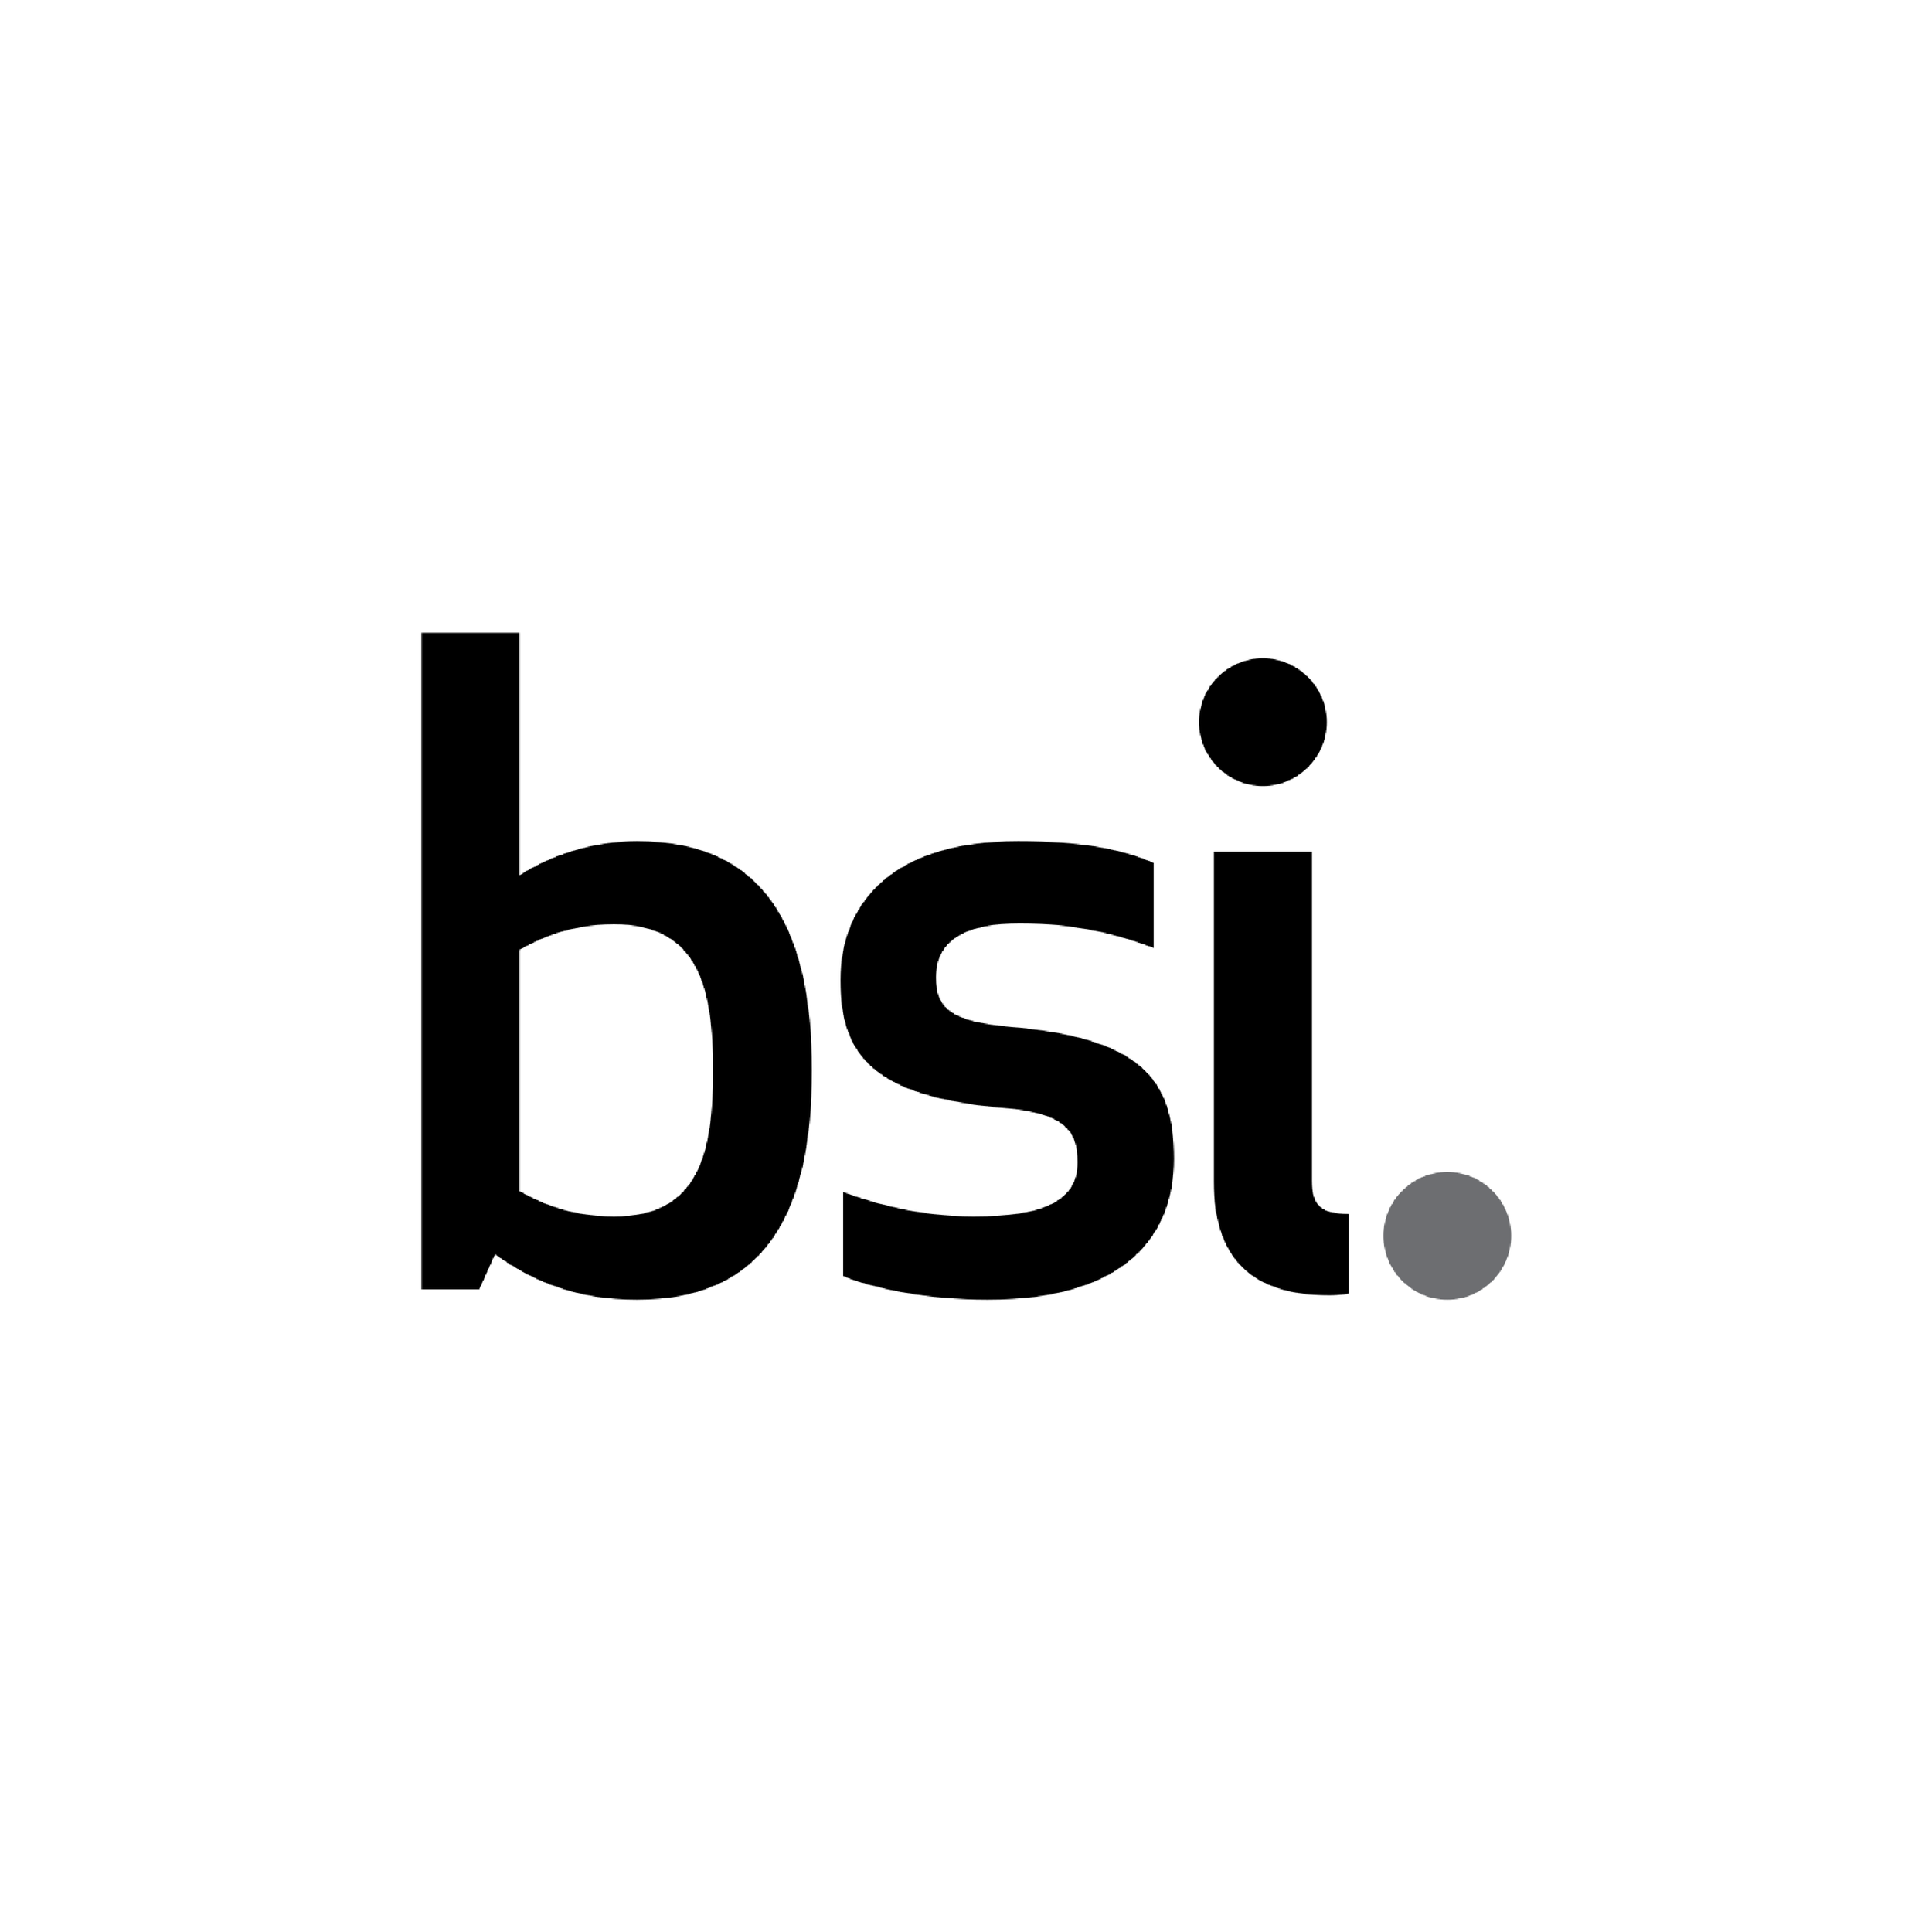 British Standards Institute (BSI)